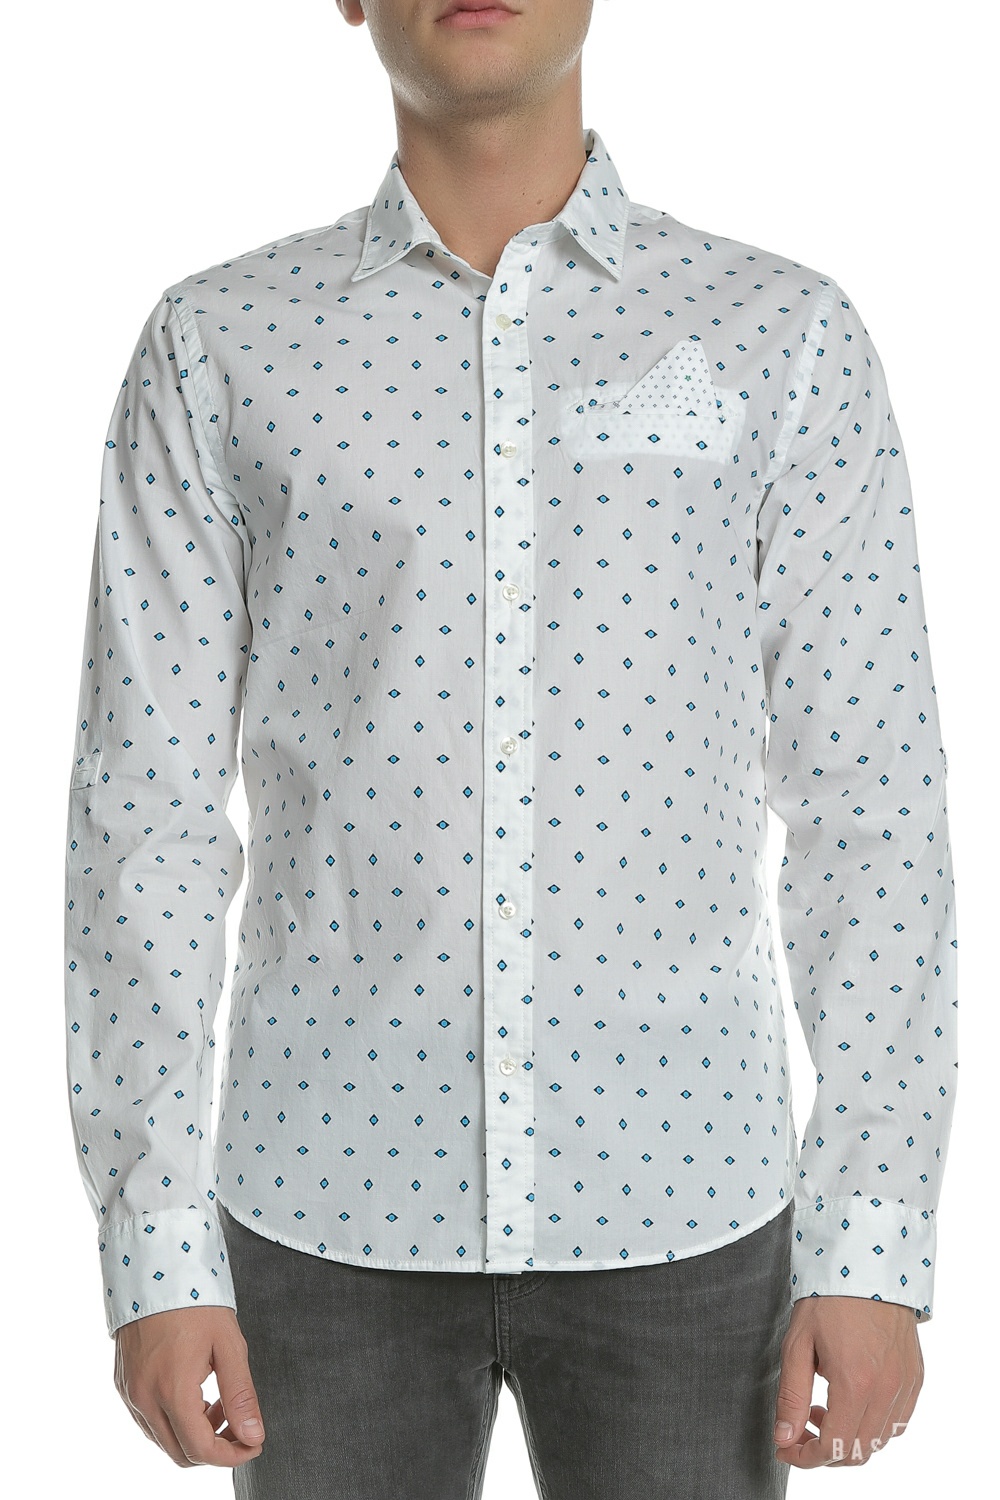 Ανδρικά/Ρούχα/Πουκάμισα/Μακρυμάνικα SCOTCH & SODA - Ανδρικό μακρυμάνικο πουκάμισο SCOTCH & SODA λευκό με print